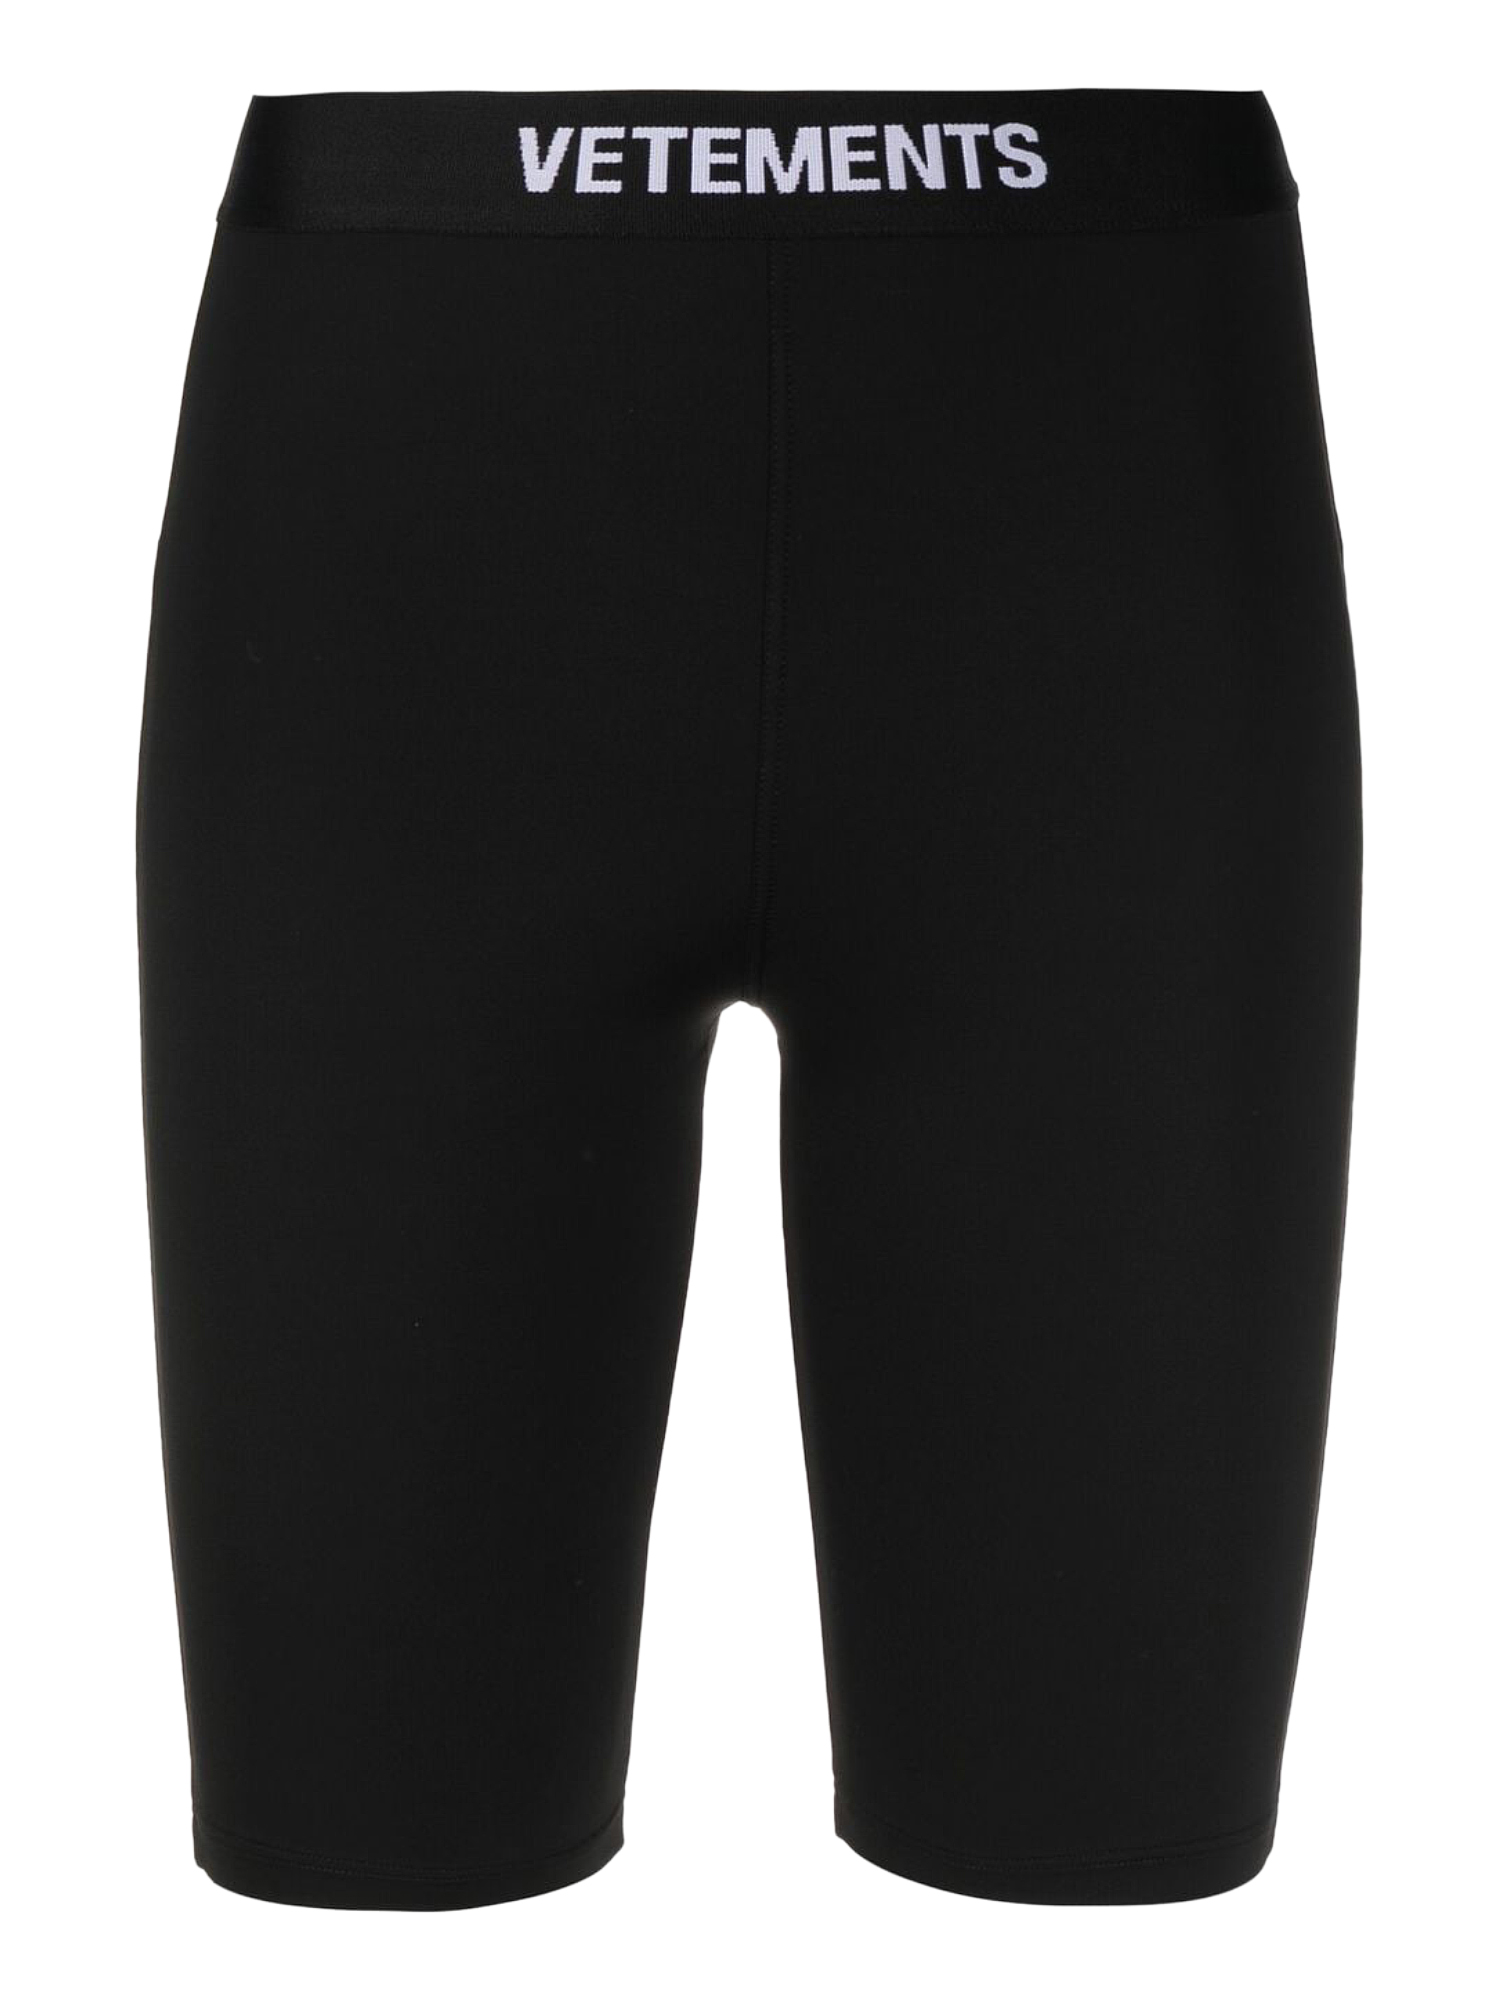 Pantalons Pour Femme - Vetements - En Synthetic Fibers Black - Taille:  -